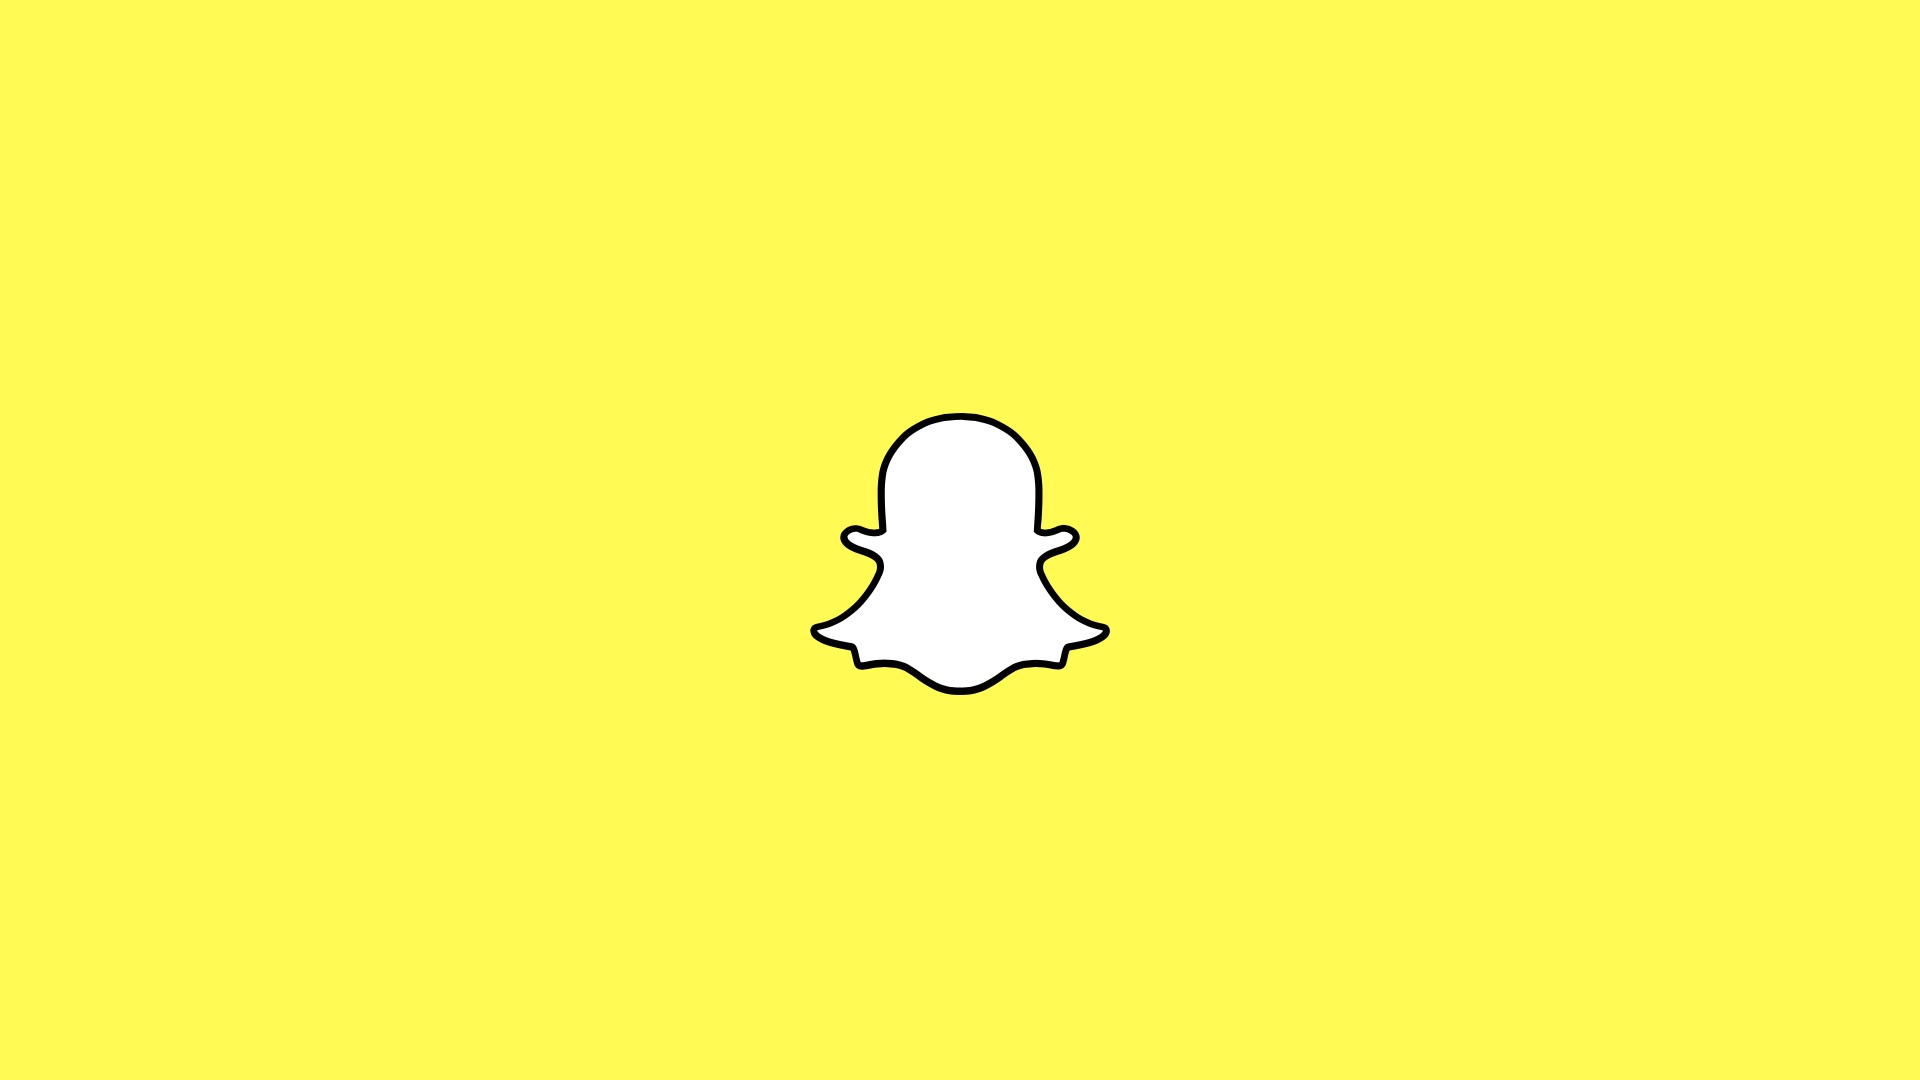 Snapchat updates - Snapchat logo on yellow background